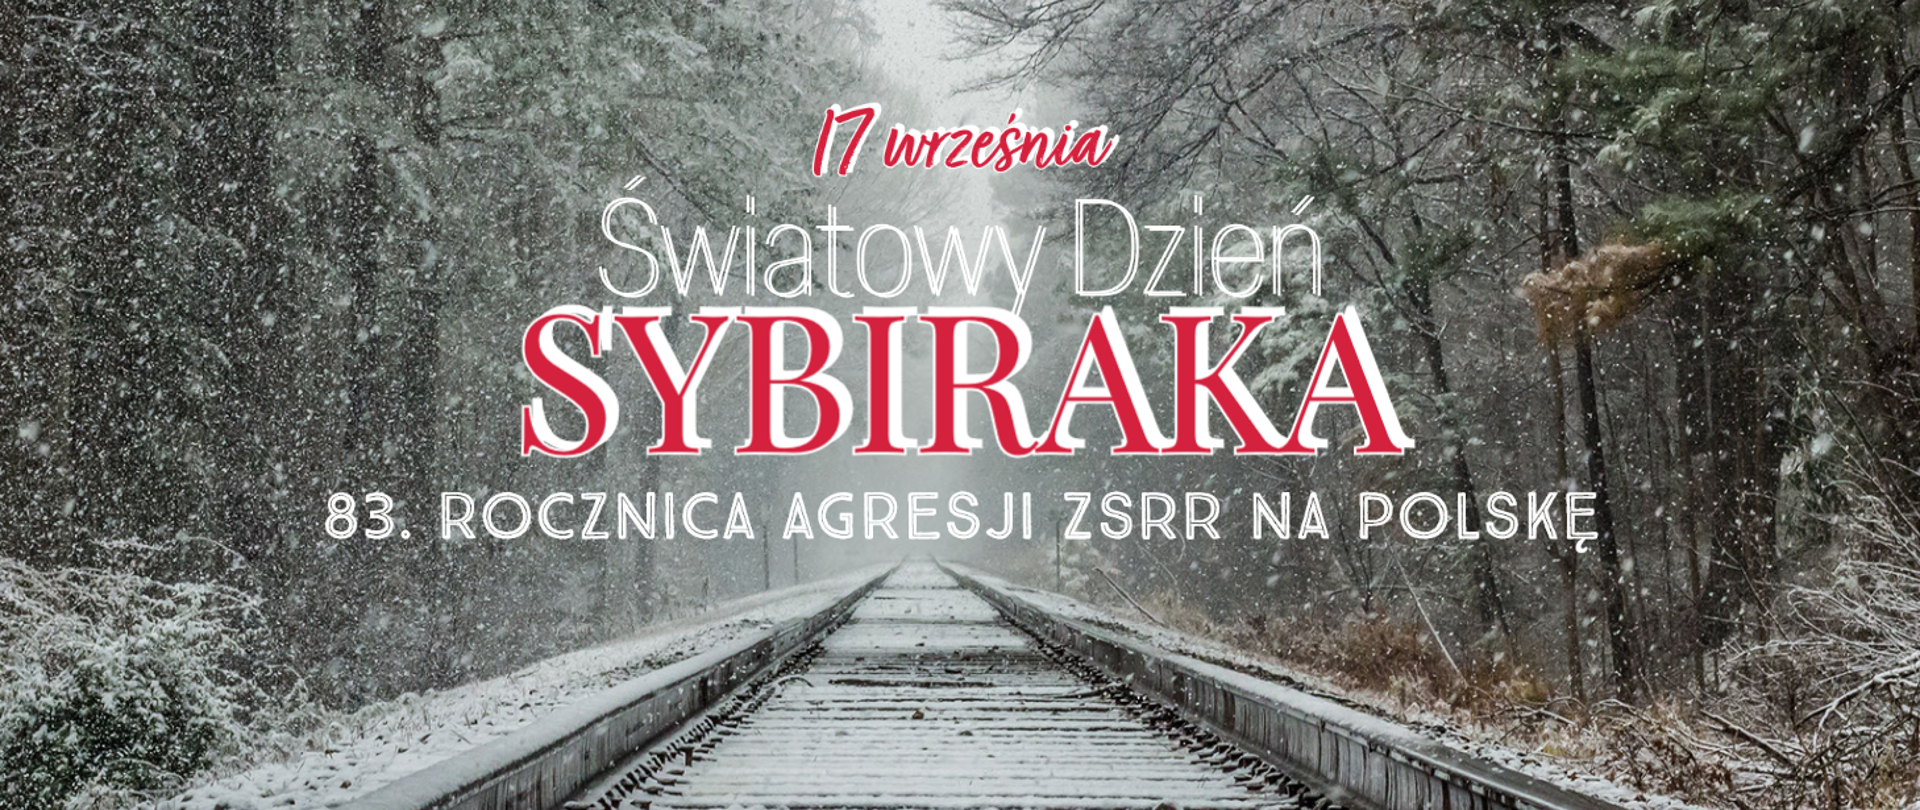 83. rocznica sowieckiej agresji na Polskę i Dzień Sybiraka